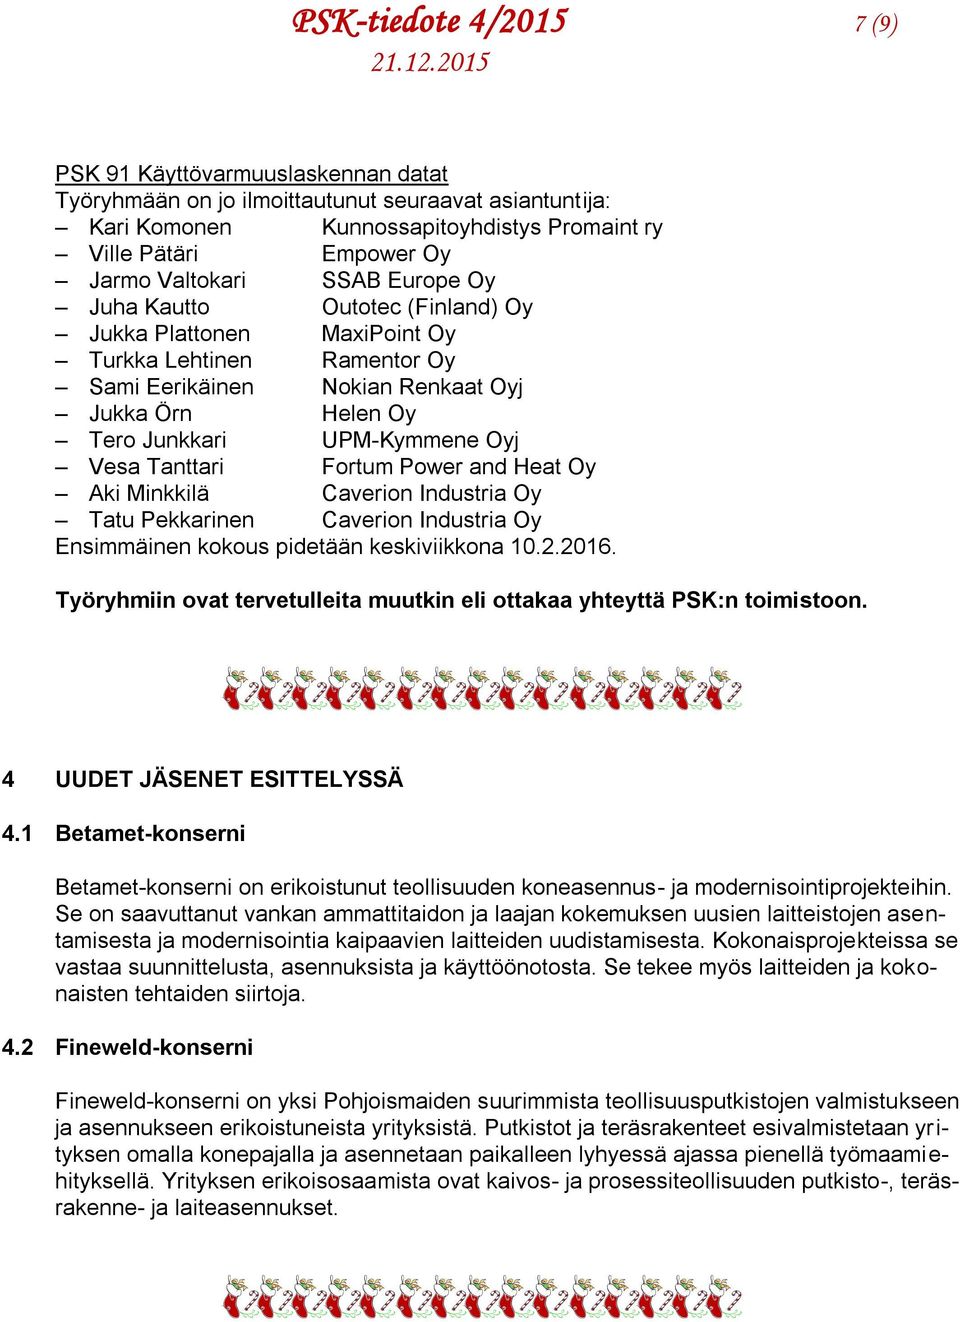 Vesa Tanttari Fortum Power and Heat Oy Aki Minkkilä Caverion Industria Oy Tatu Pekkarinen Caverion Industria Oy Ensimmäinen kokous pidetään keskiviikkona 10.2.2016.